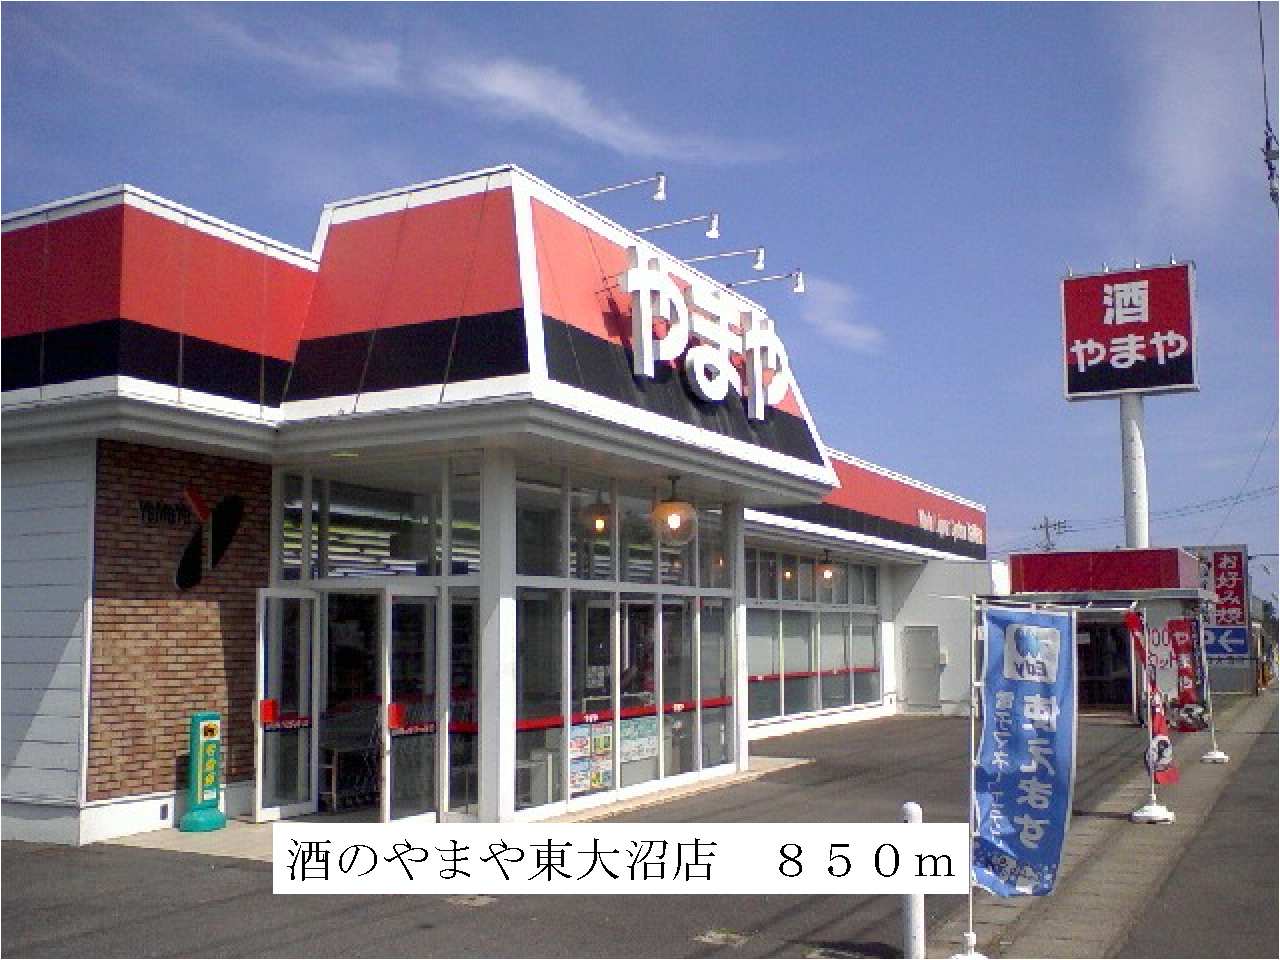 Supermarket. Yamaya Higashionuma store up to (super) 850m